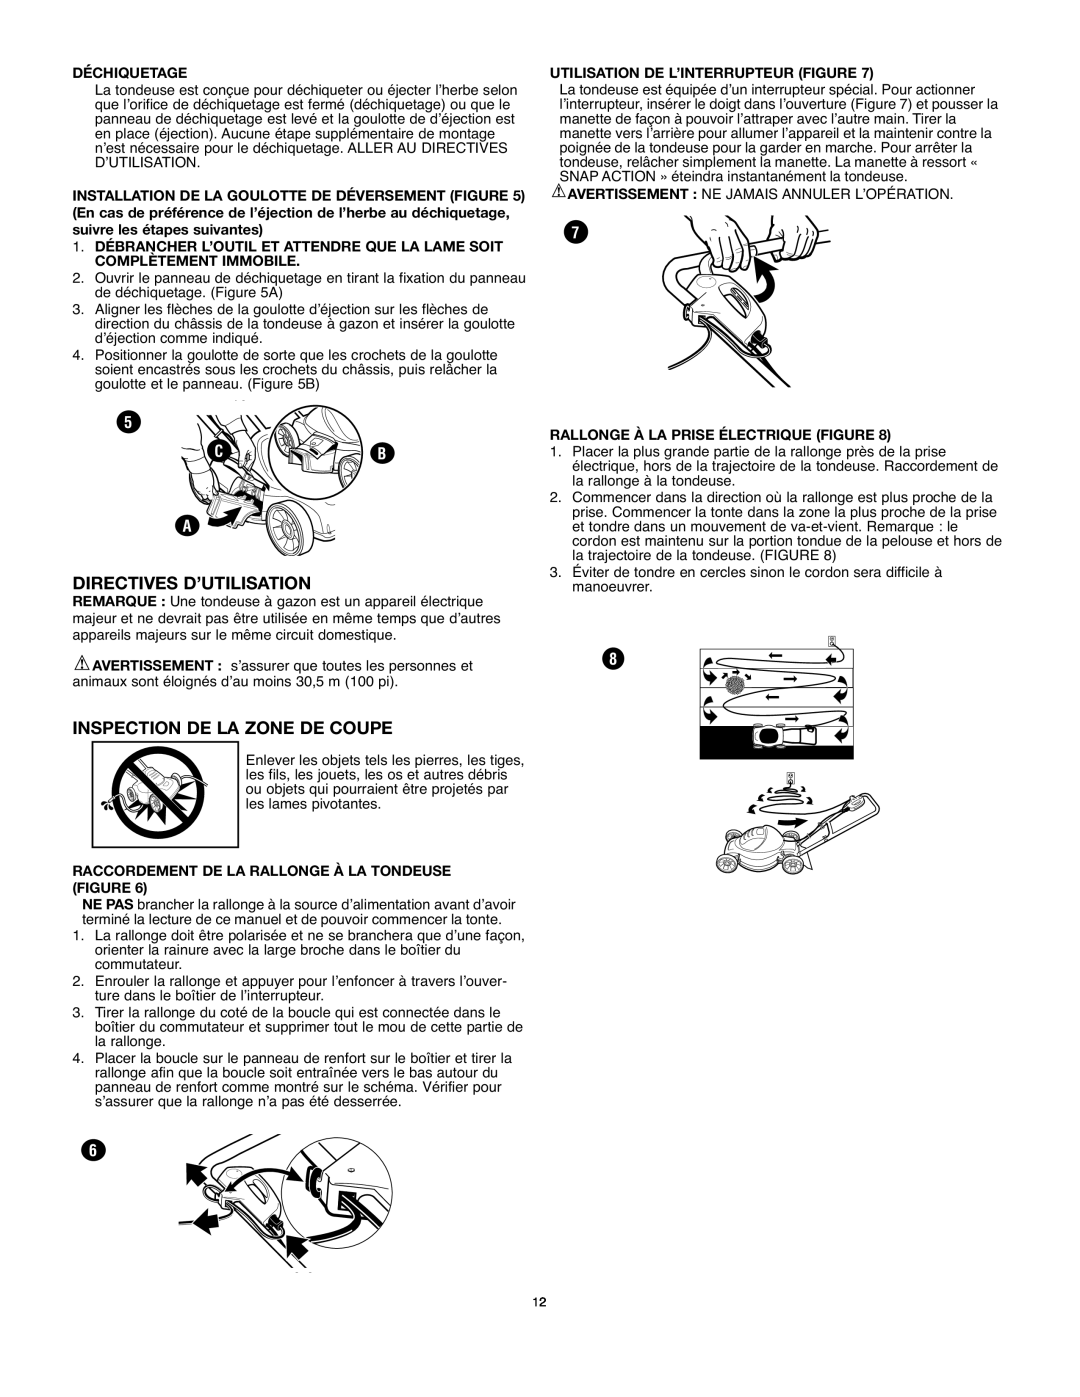 Black & Decker mm275 instruction manual Directives D’Utilisation, Inspection De La Zone De Coupe, C B 